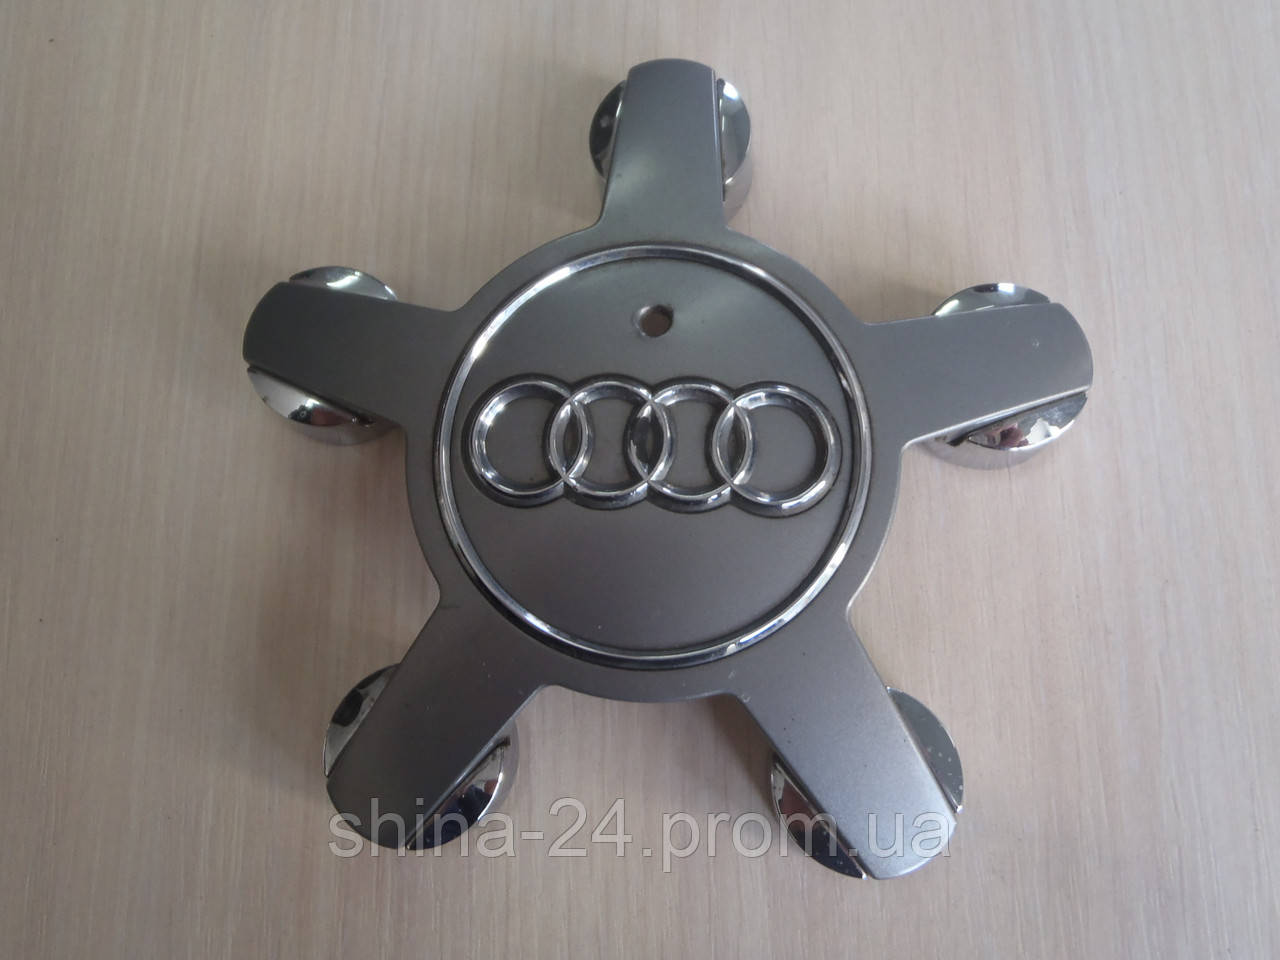 Оригинальные Колпачки заглушки на диски Audi/Ауди 